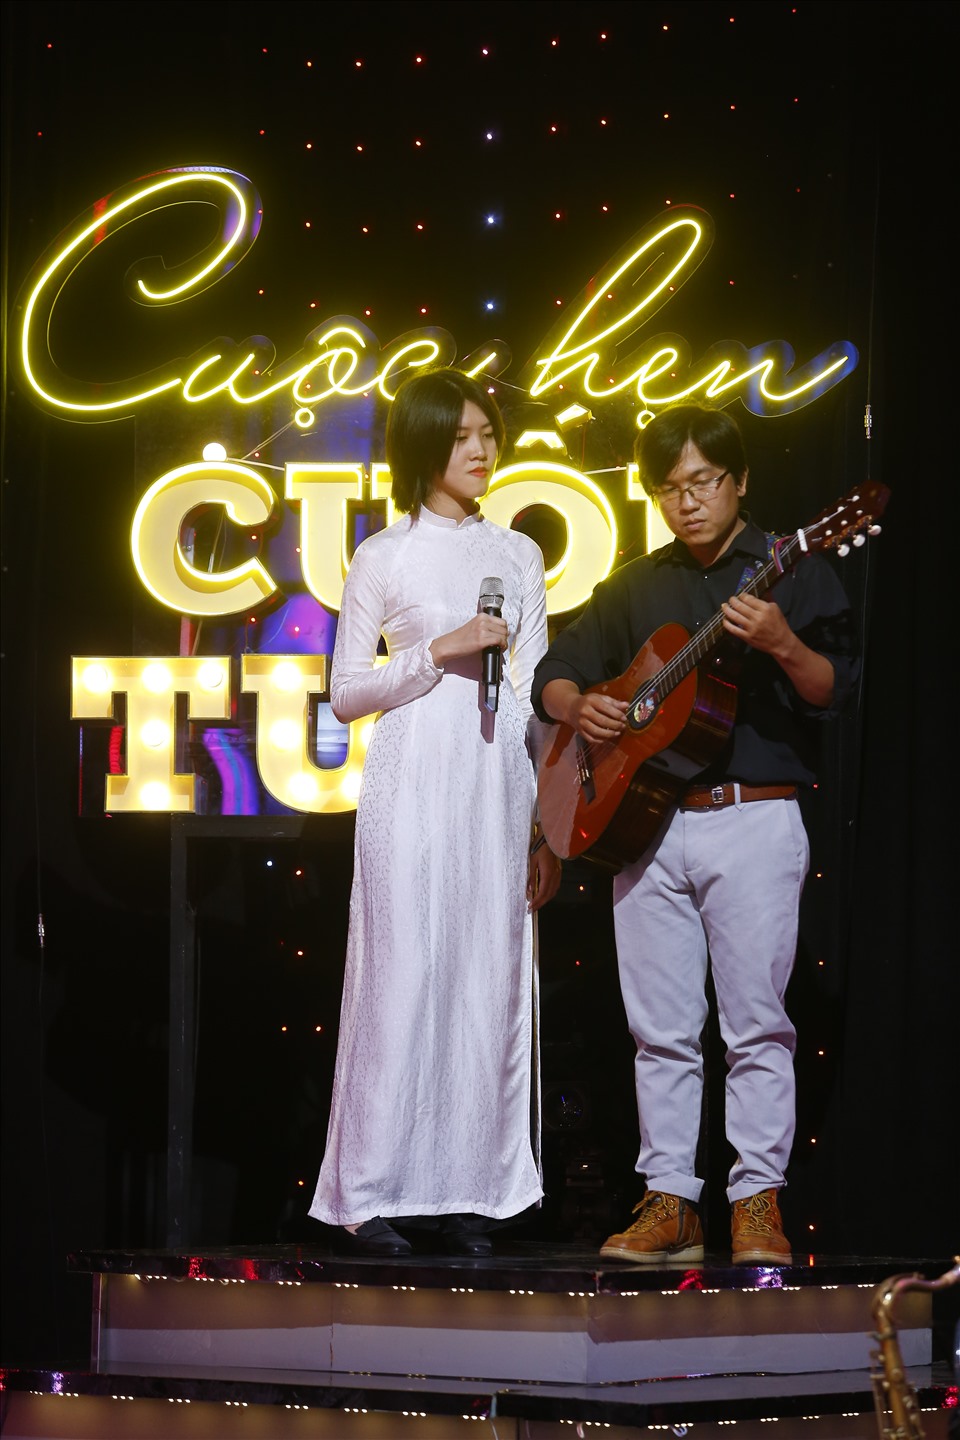 Cùng mang tới không gian của niềm vui và cả những giọt nước mắt trong chương trình là cặp đôi đẹp trong âm nhạc - Hoàng Trang và Nguyễn Đông. Ảnh: VTV